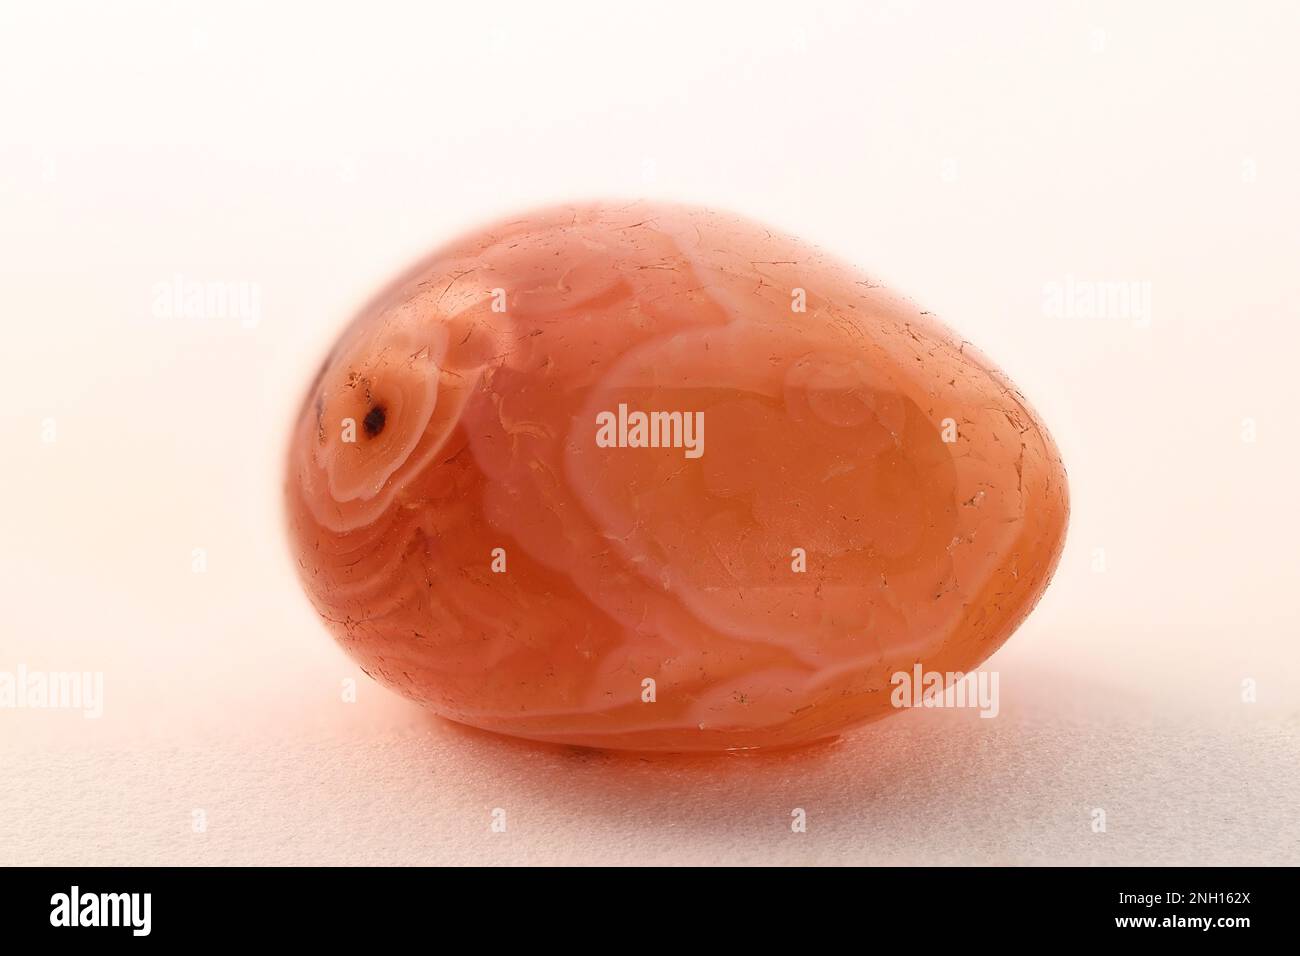 La cornalina o cornalina es una variedad naranja-roja de cuarzo criptocristalino, comúnmente utilizado como una piedra preciosa semi-preciosa Foto de stock